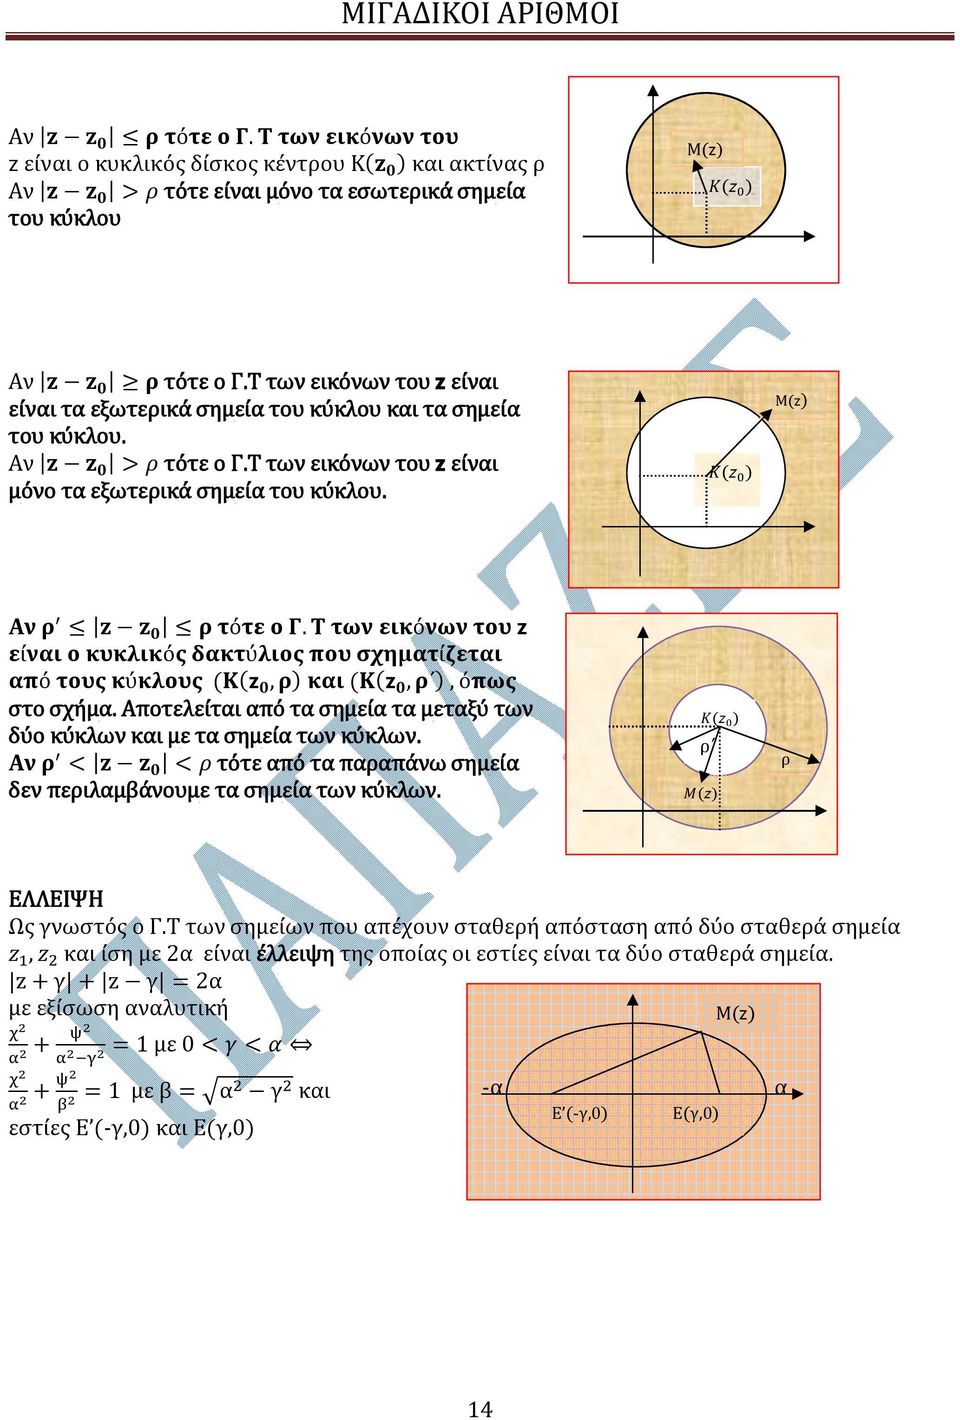 Τ των εικόνων του είναι ο κυκλικός δακτύλιος που σχηματίζεται από τους κύκλους (Κ( 0, ρ) και (Κ( 0, ρ ), όπως στο σχήμα. Αποτελείται από τα σημεία τα μεταξύ των δύο κύκλων και με τα σημεία των κύκλων.